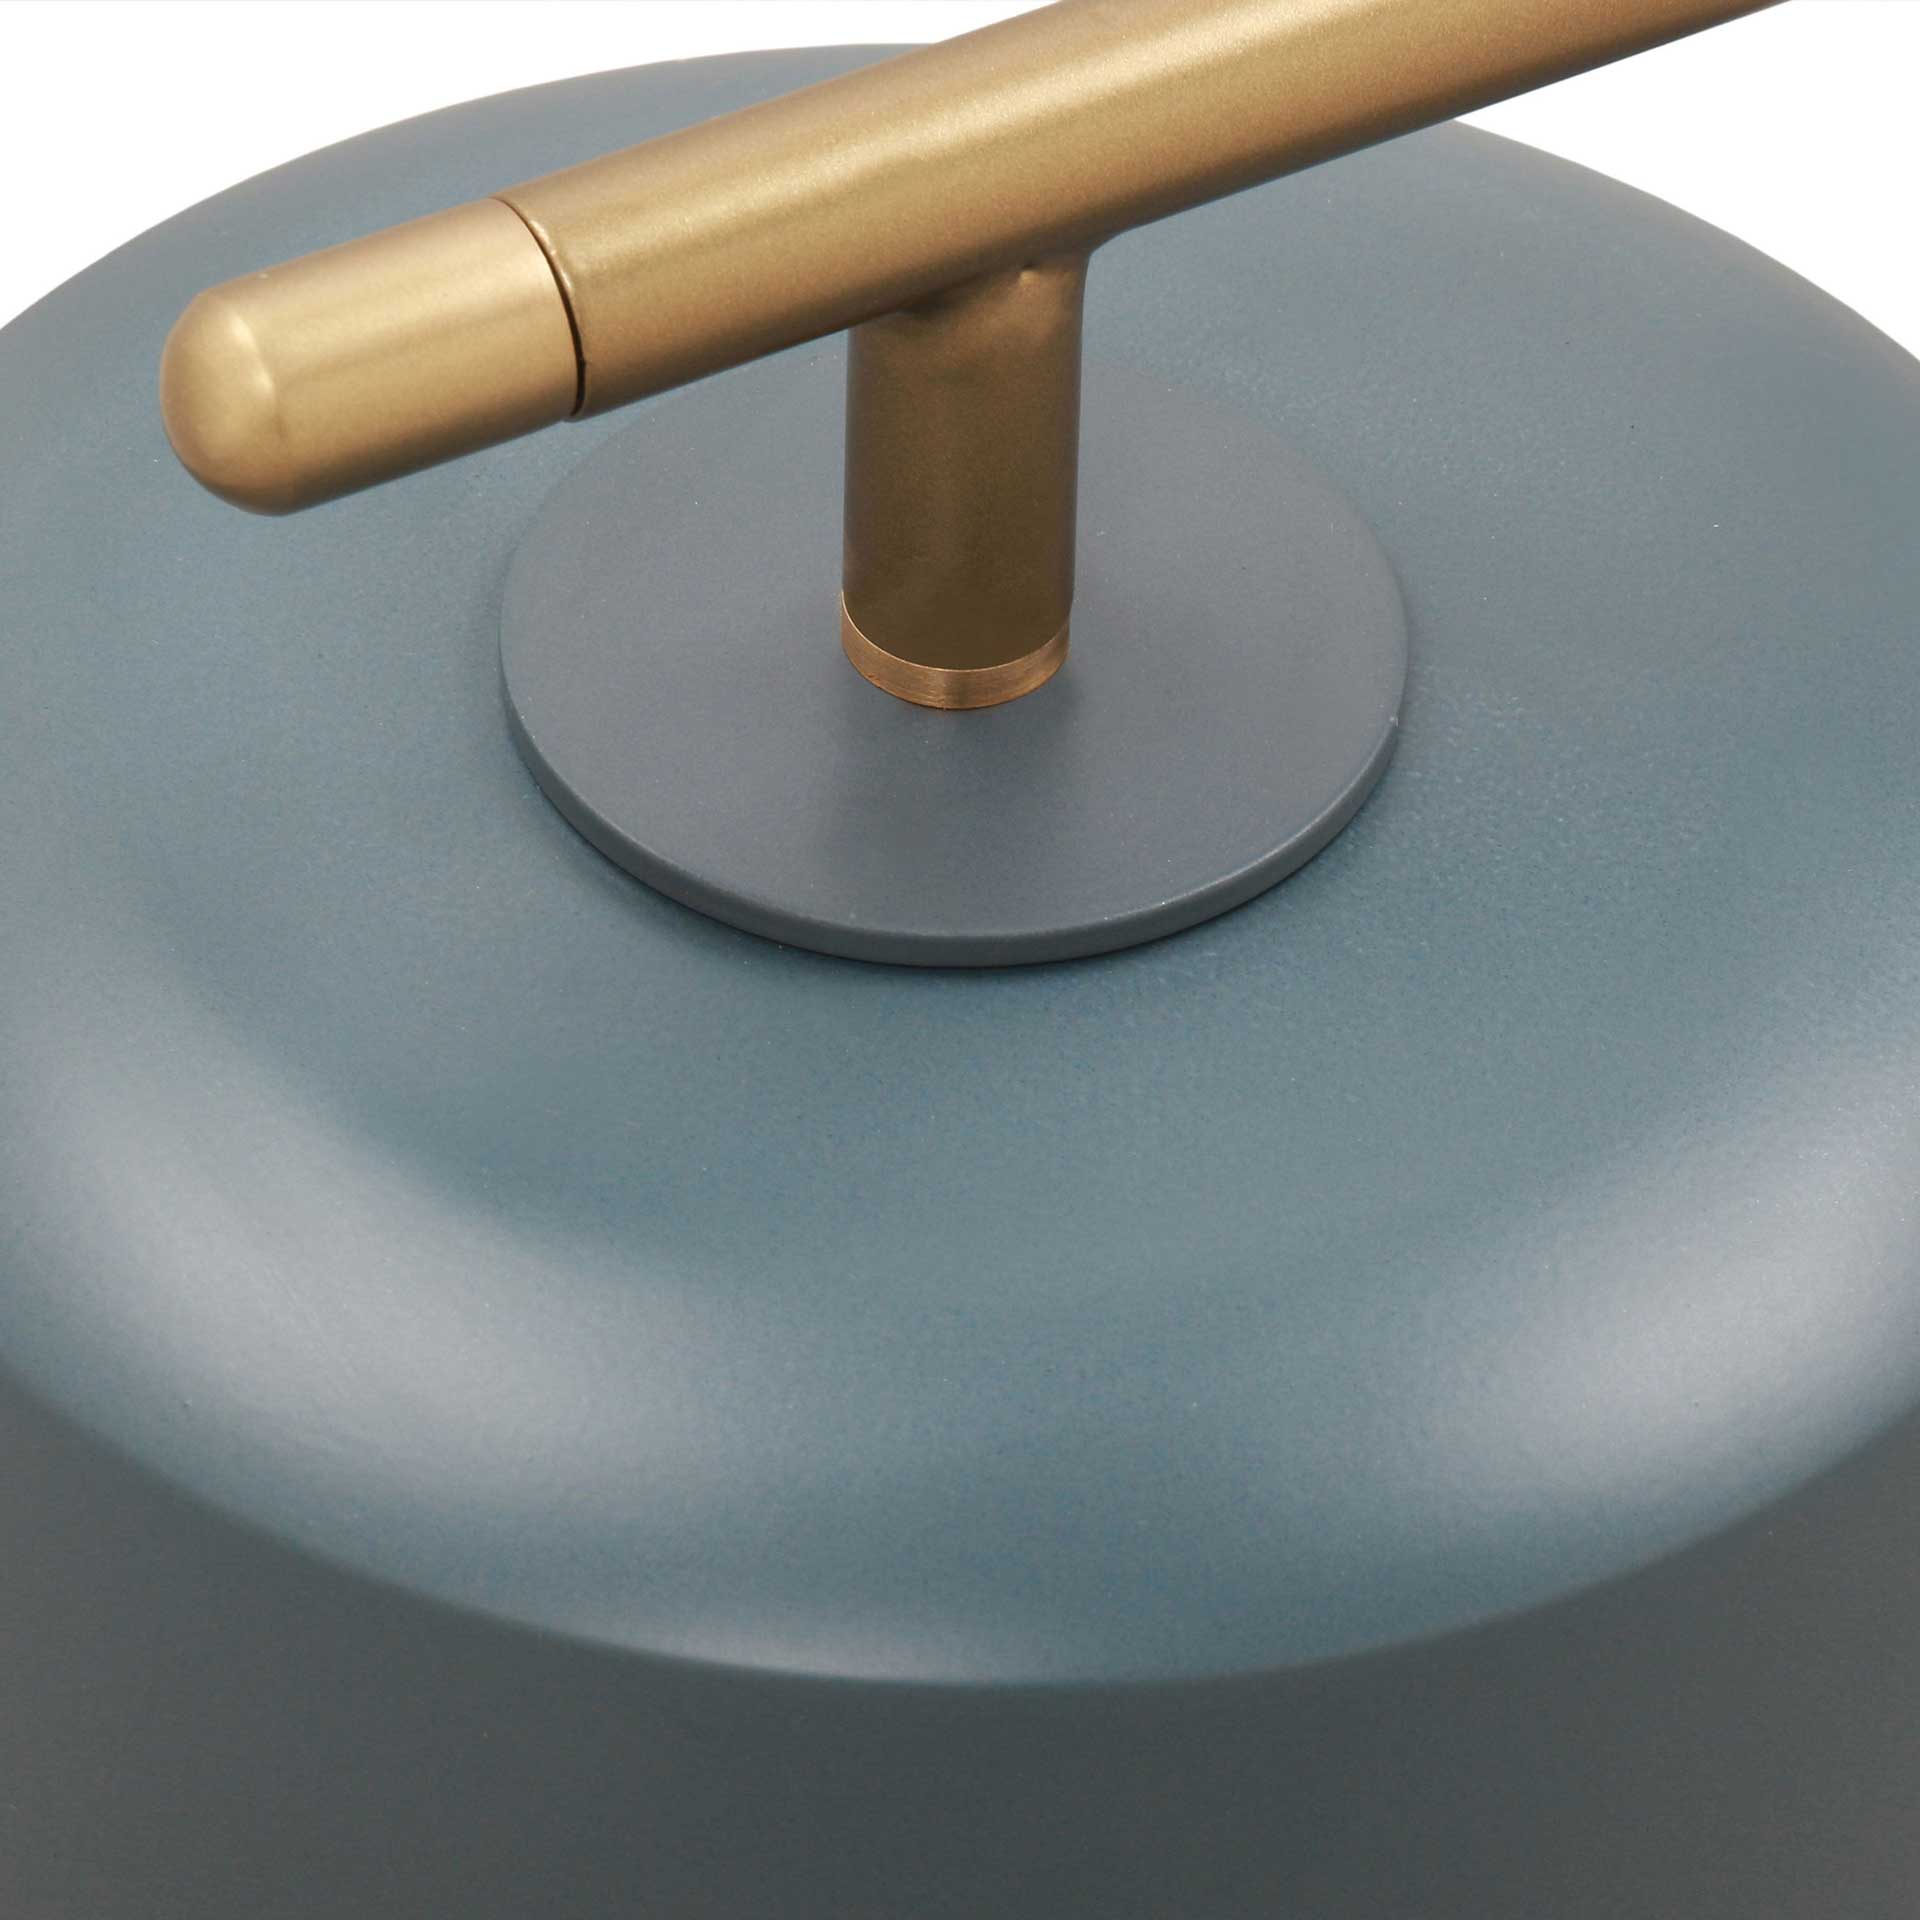 Barlett Marble Base Table Lamp Antique Brass/Ocean Gray